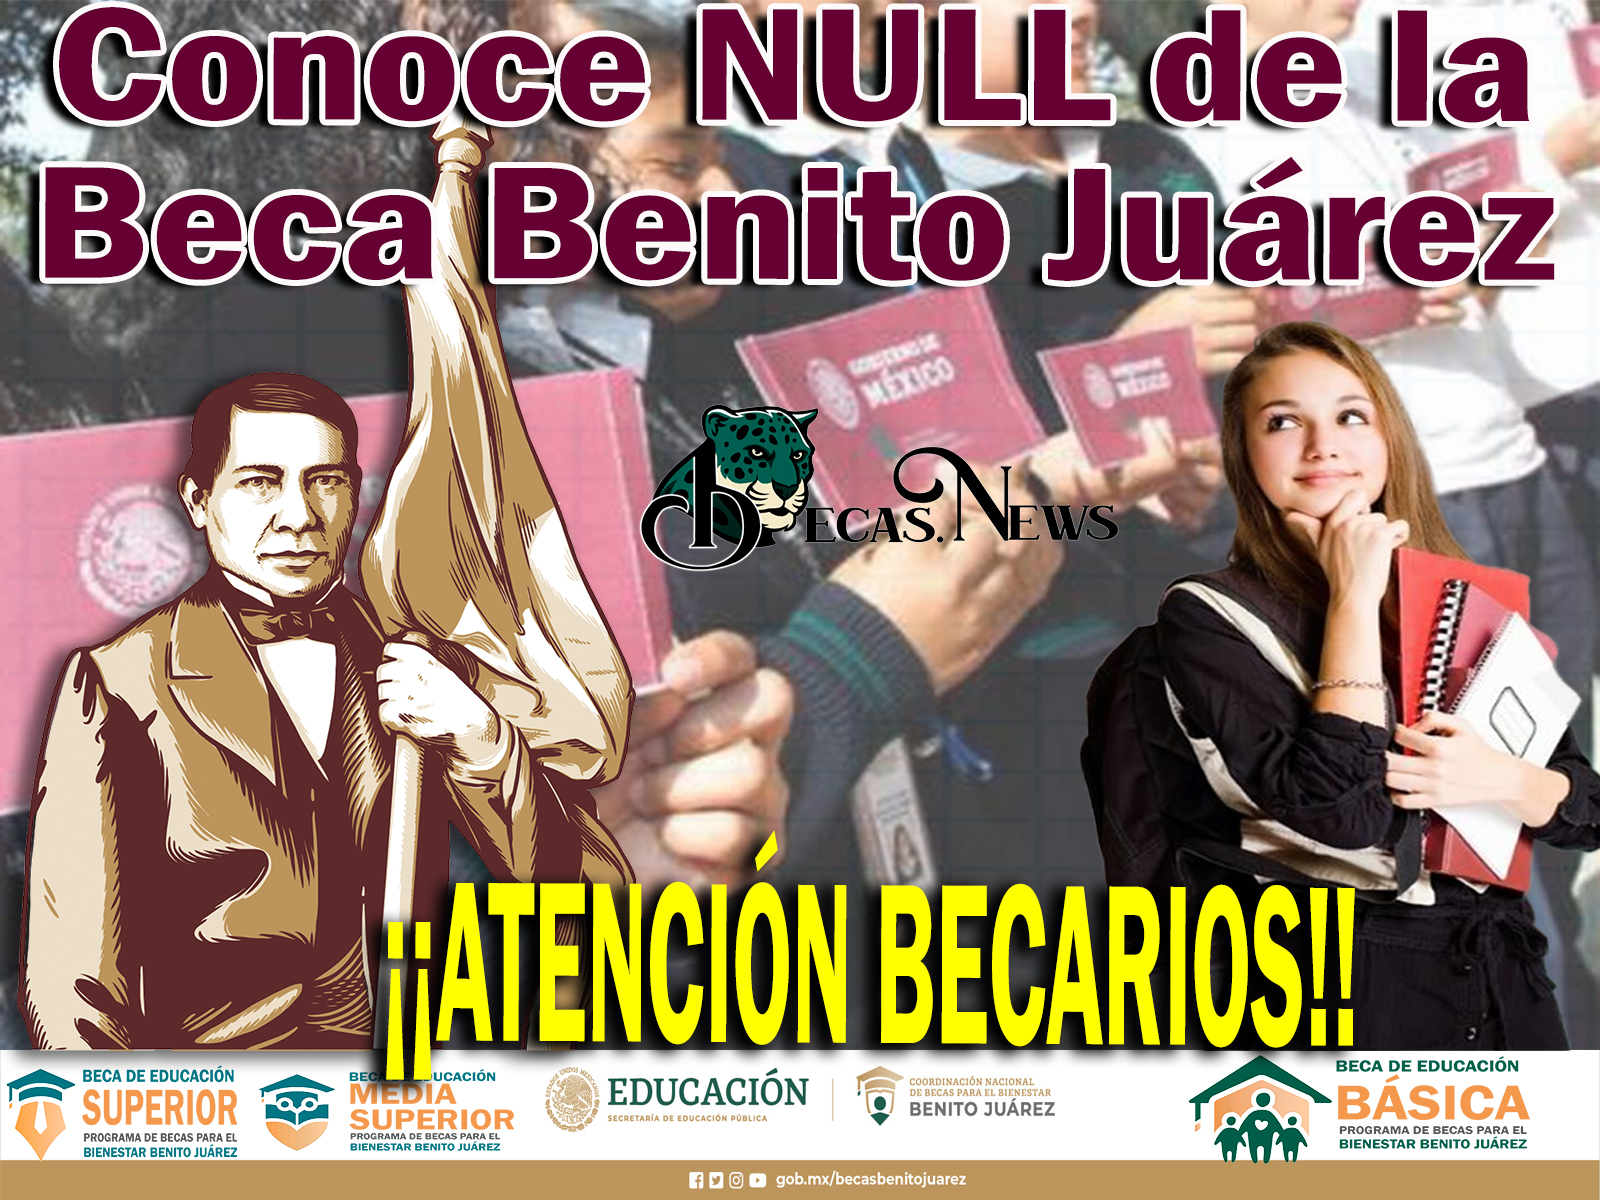 ¡¡ATENCIÓN BECARIOS!! Conoce NULL de la Beca Benito Juárez 